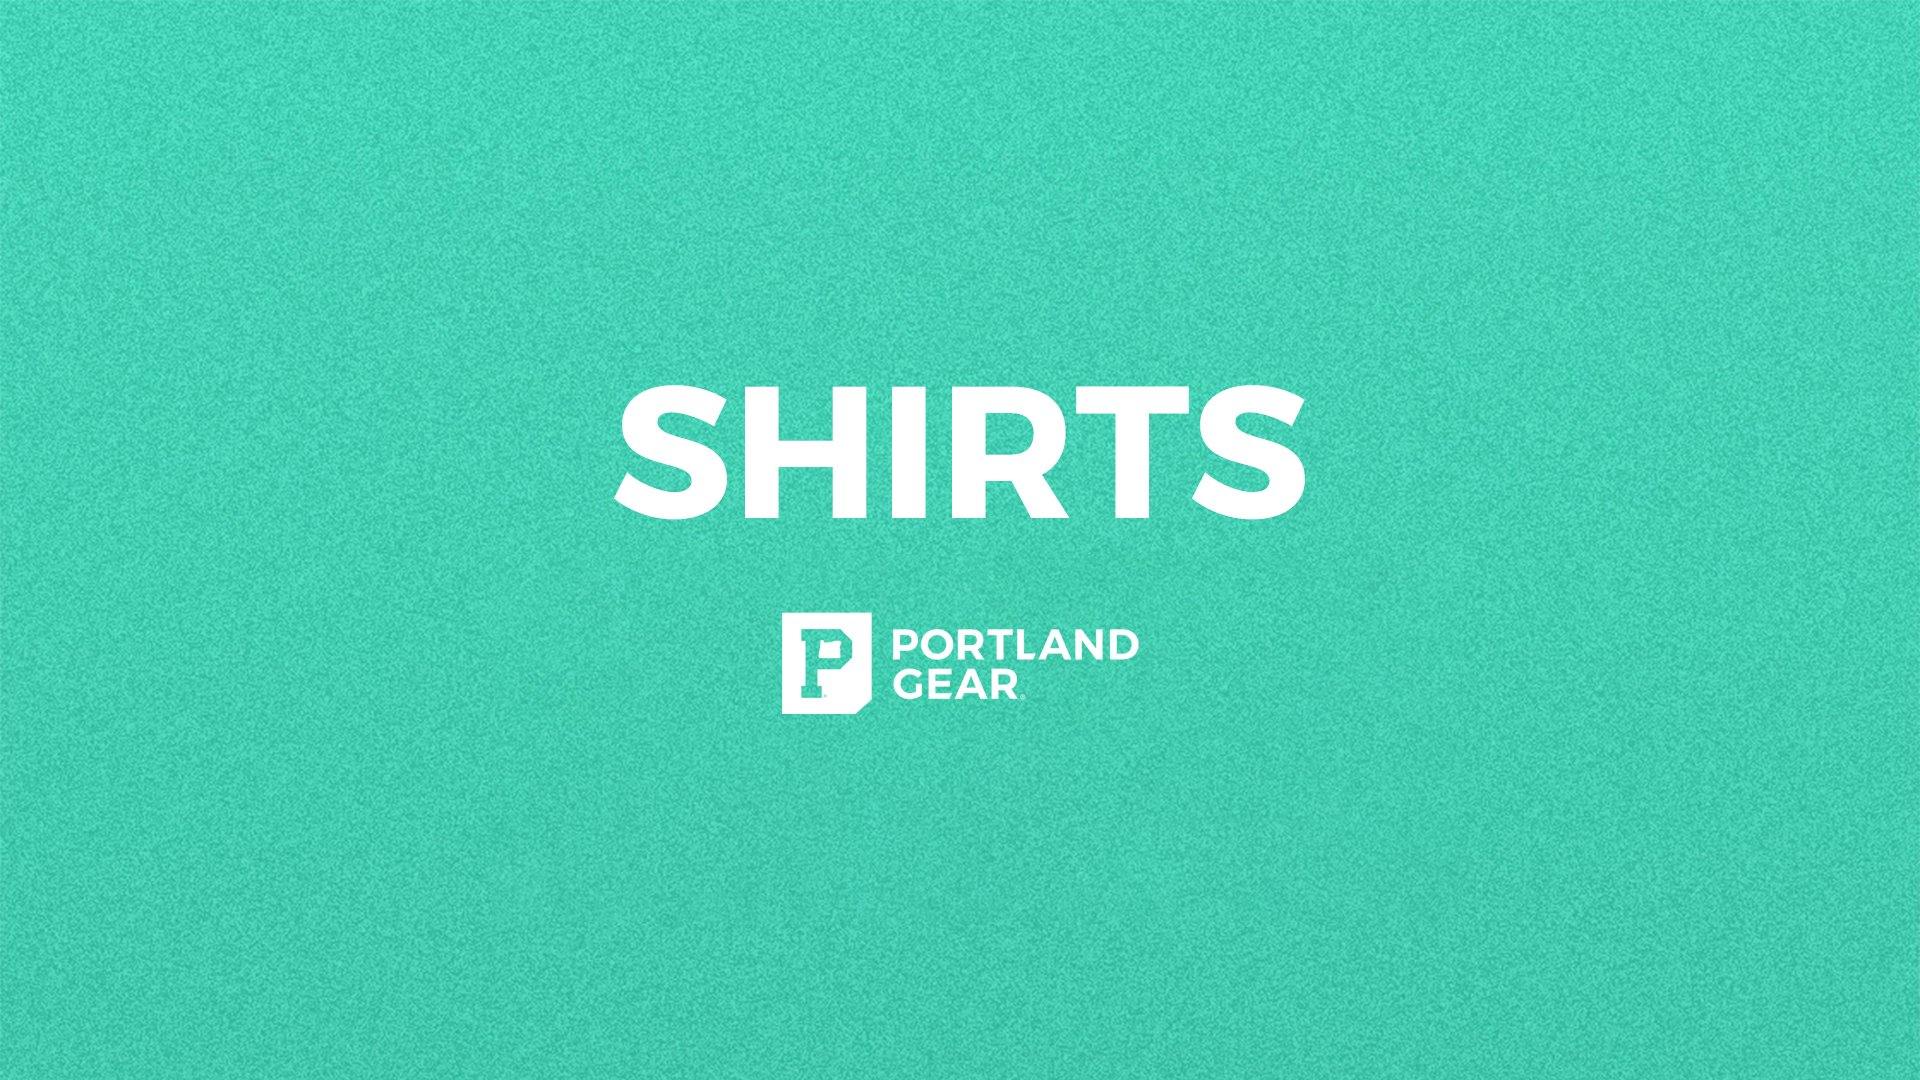 Shirts - Portland Gear